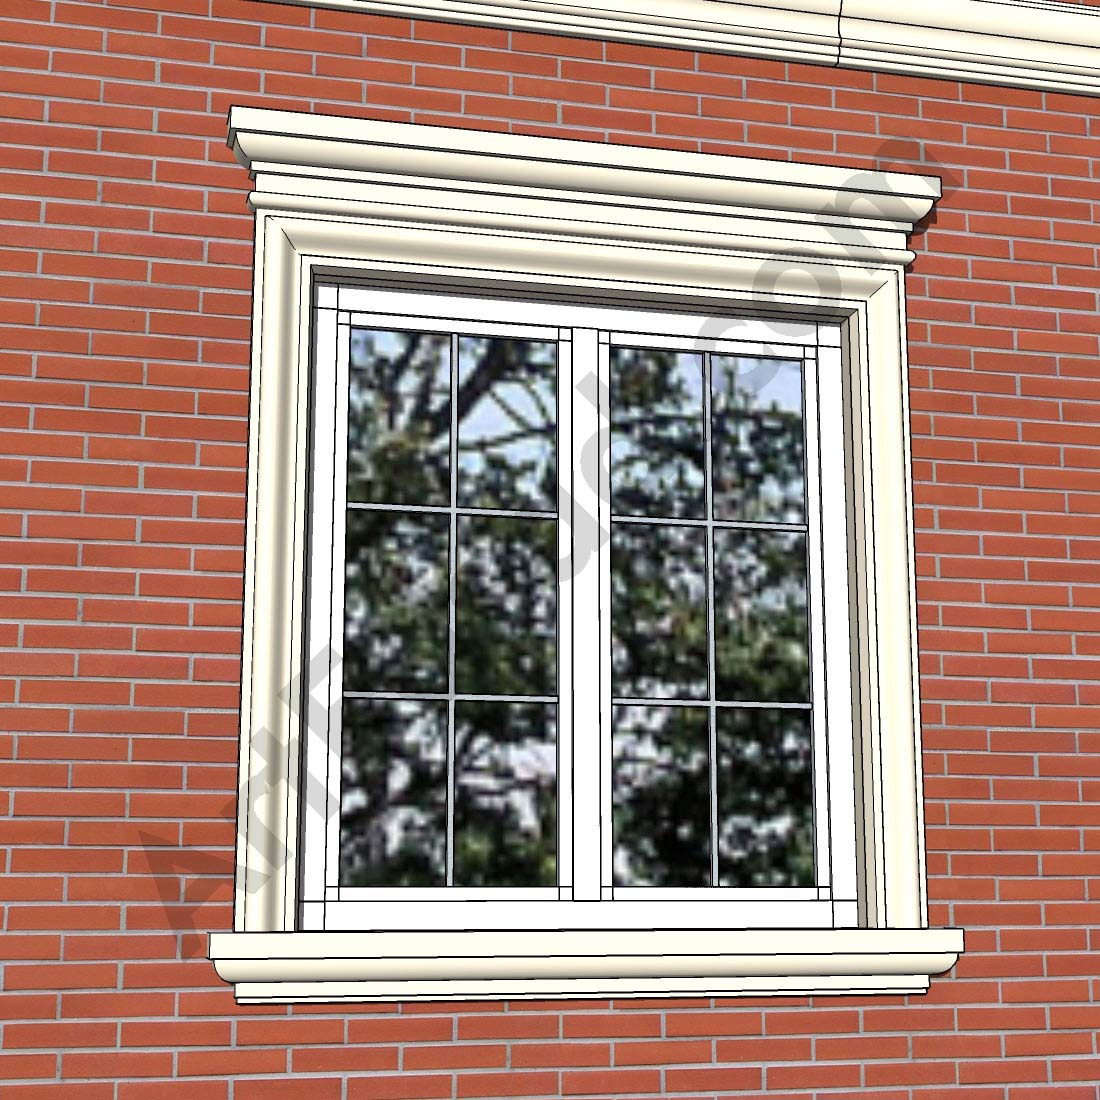 exterior window trim ideas for brick houses